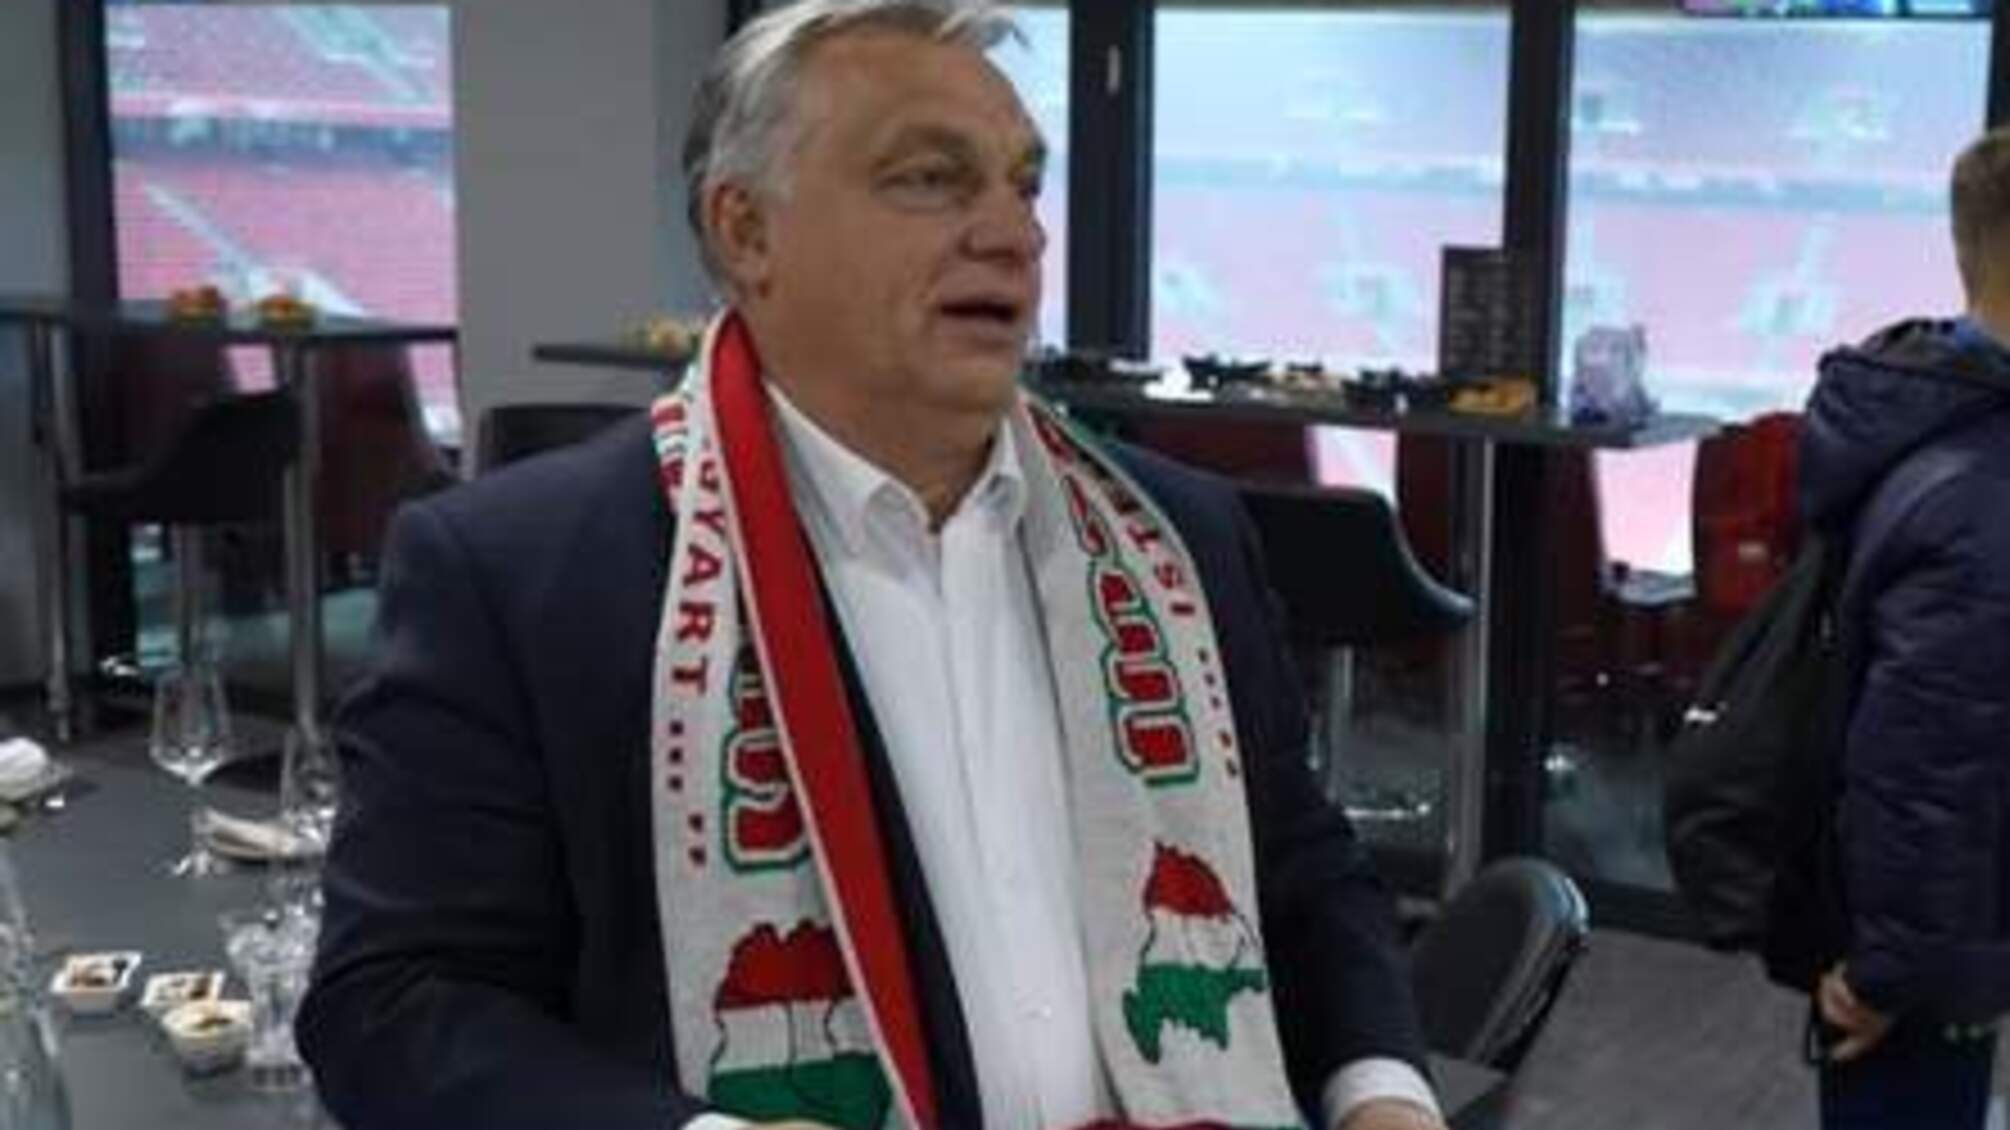 Футбольный скандал: в УЕФА разрешили Венгрии использовать карты с частью территории Украины (видео)